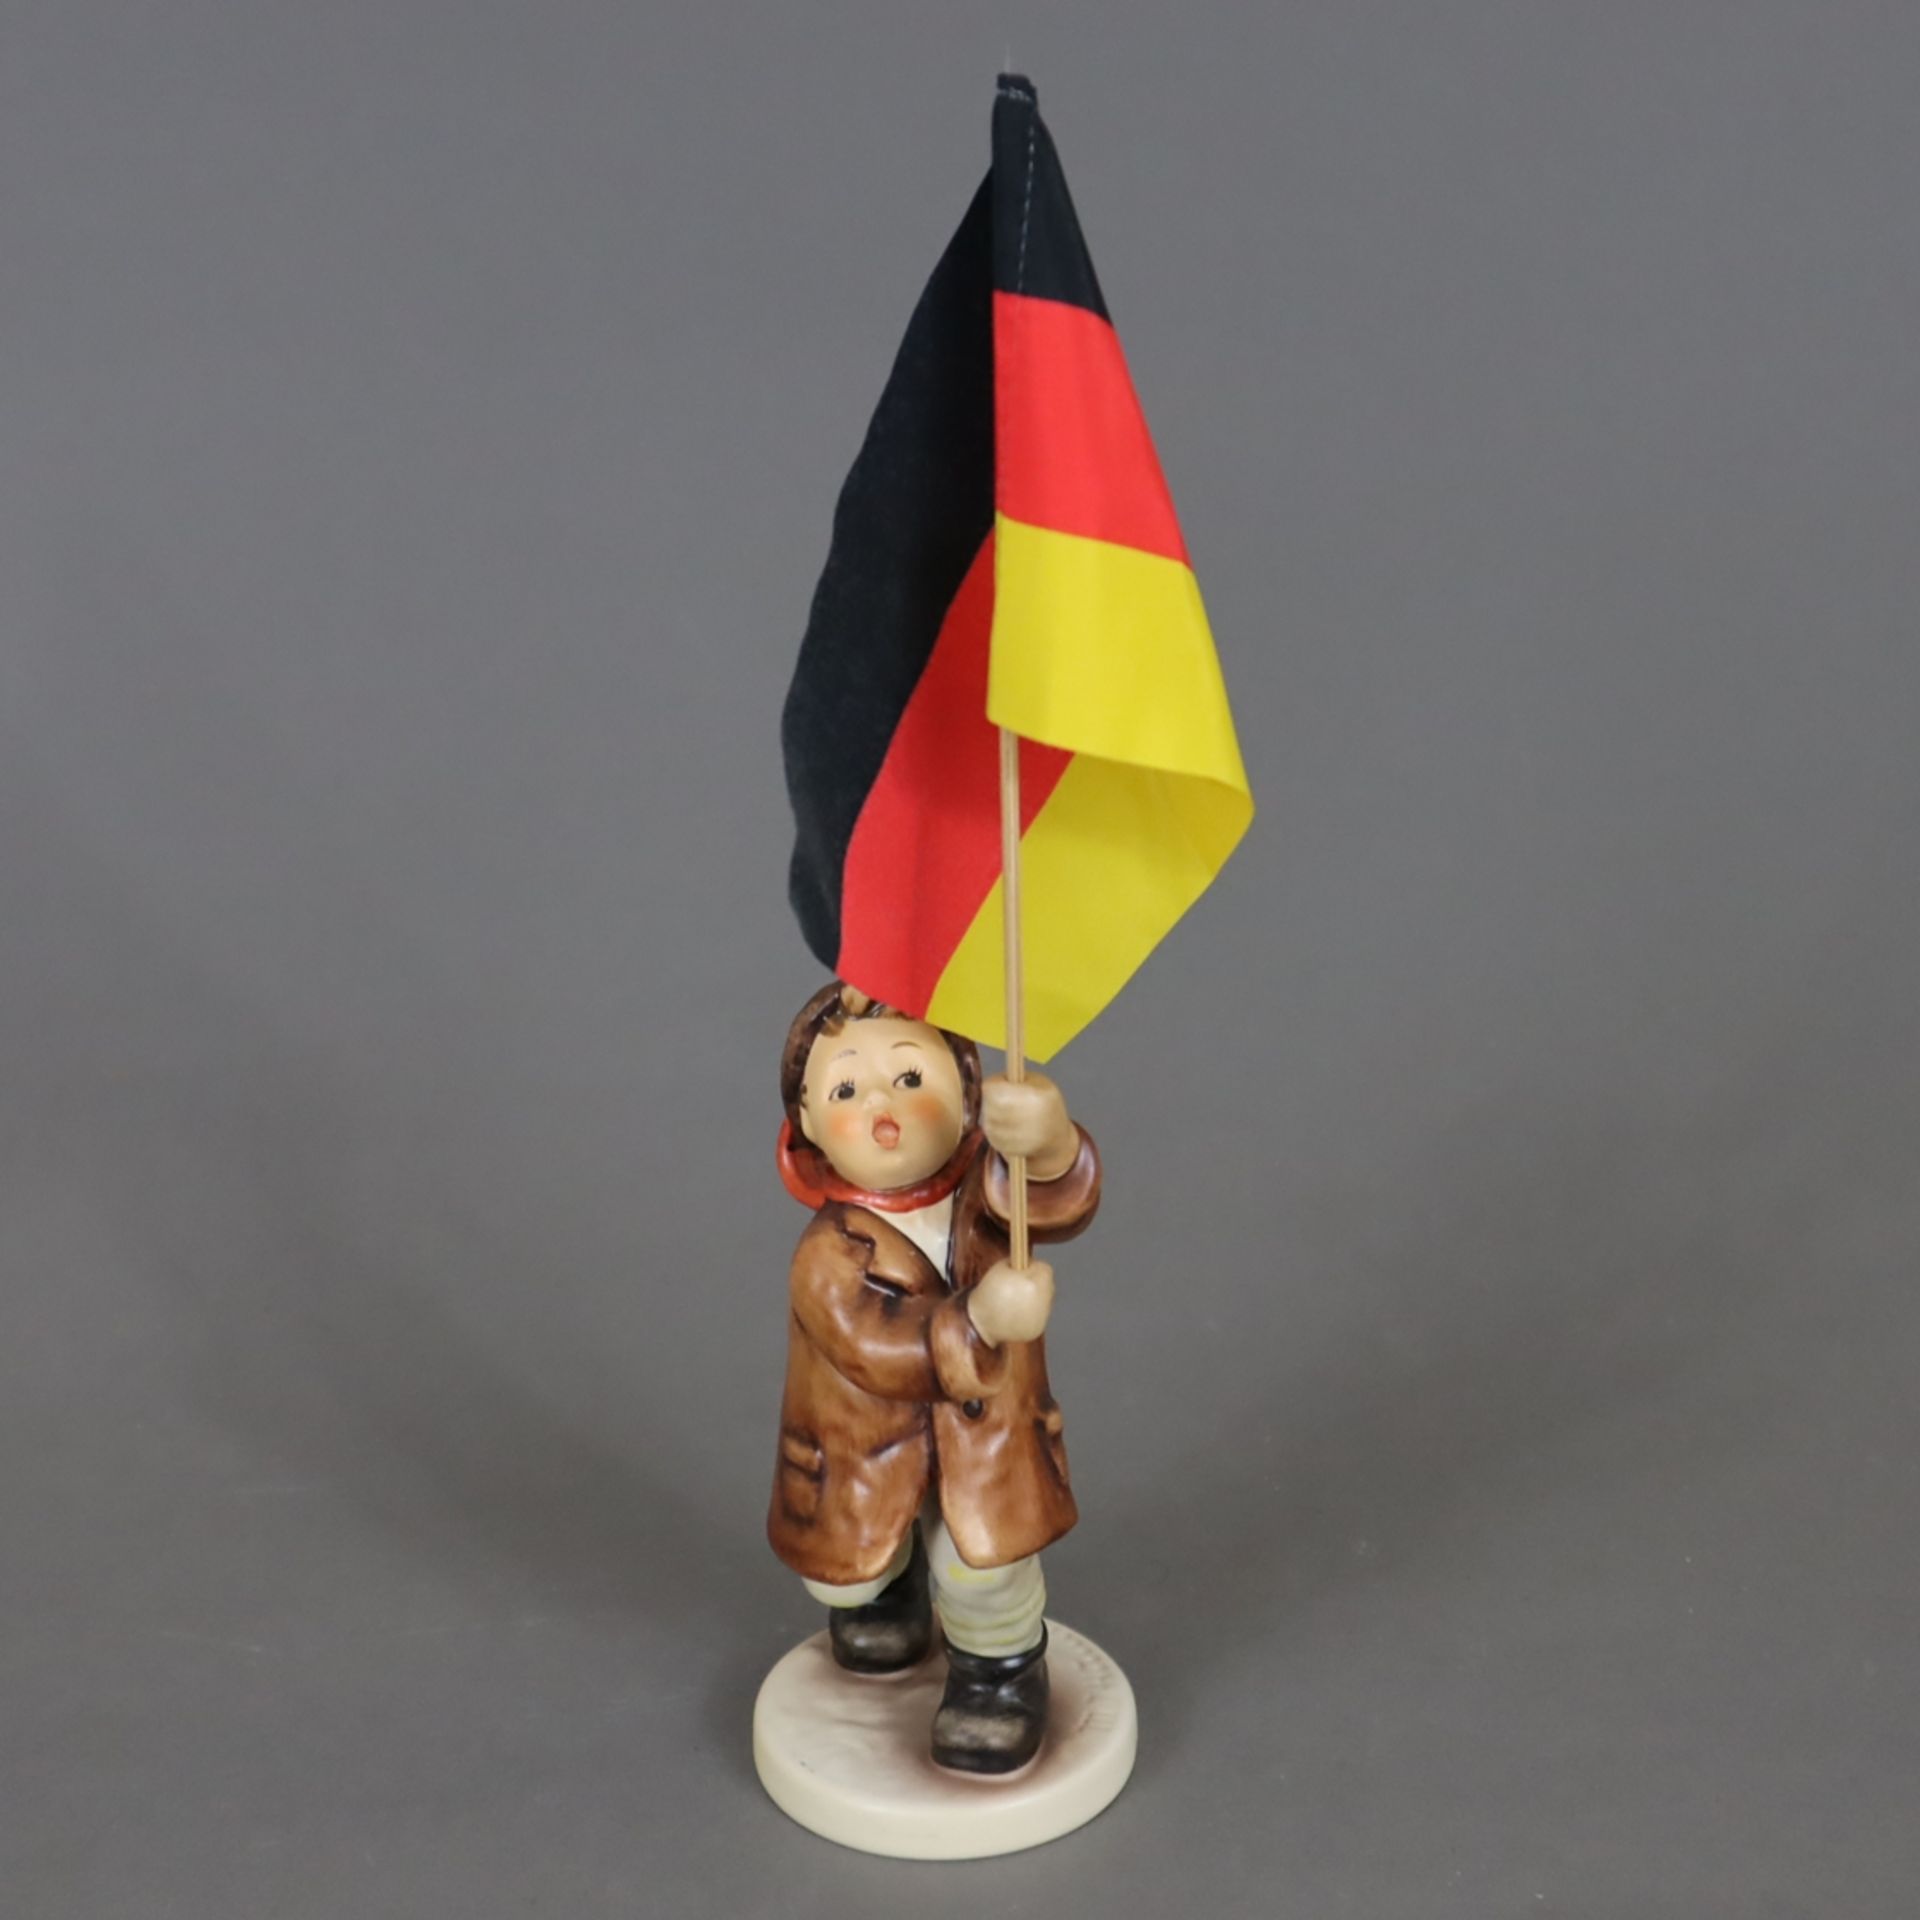 Hummel-Figur "Fahnenträger" - Goebel, Modellnr. 739/I, Steingut, polychrom bemalt, Plinthe mit Präg